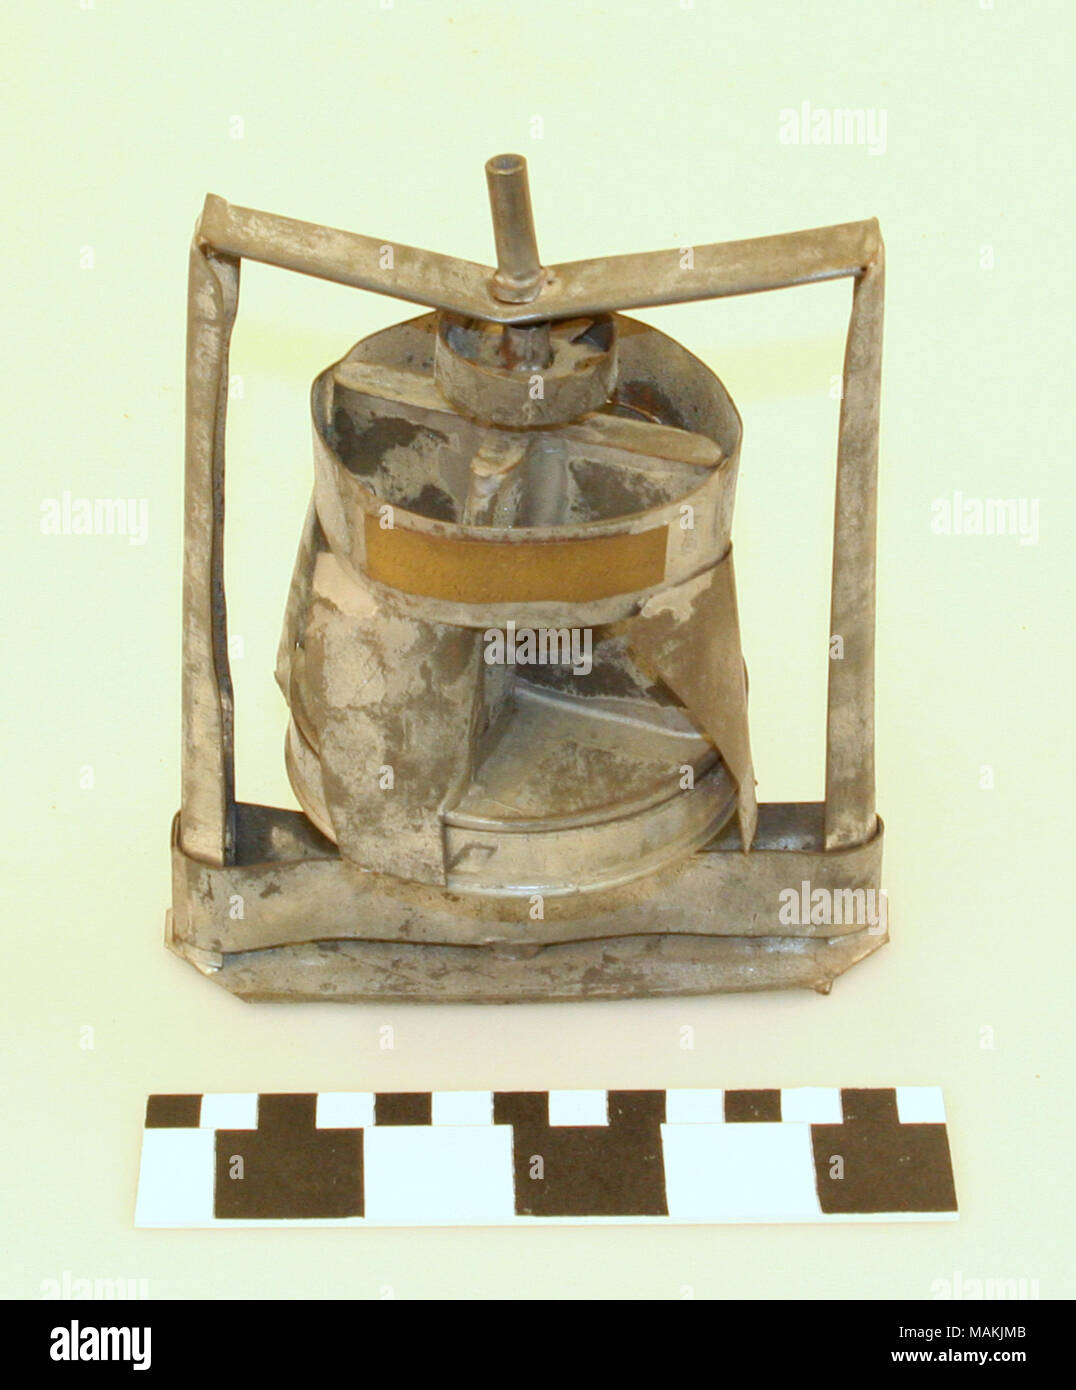 Modello di domanda di brevetto (brevetto n. 85,910) di un vapore e gas condensatore; brevettato a gennaio 19, 1869 da Alonzo W. Cram come una invenzione multiuso per essere utilizzato per il vapore-motori e fini di distillazione. Titolo: vapore e gas brevetto condensatore modello con brevetto originale tag da Alonzo W. Cram di San Luigi . 1869. Alonzo W. Cram Foto Stock